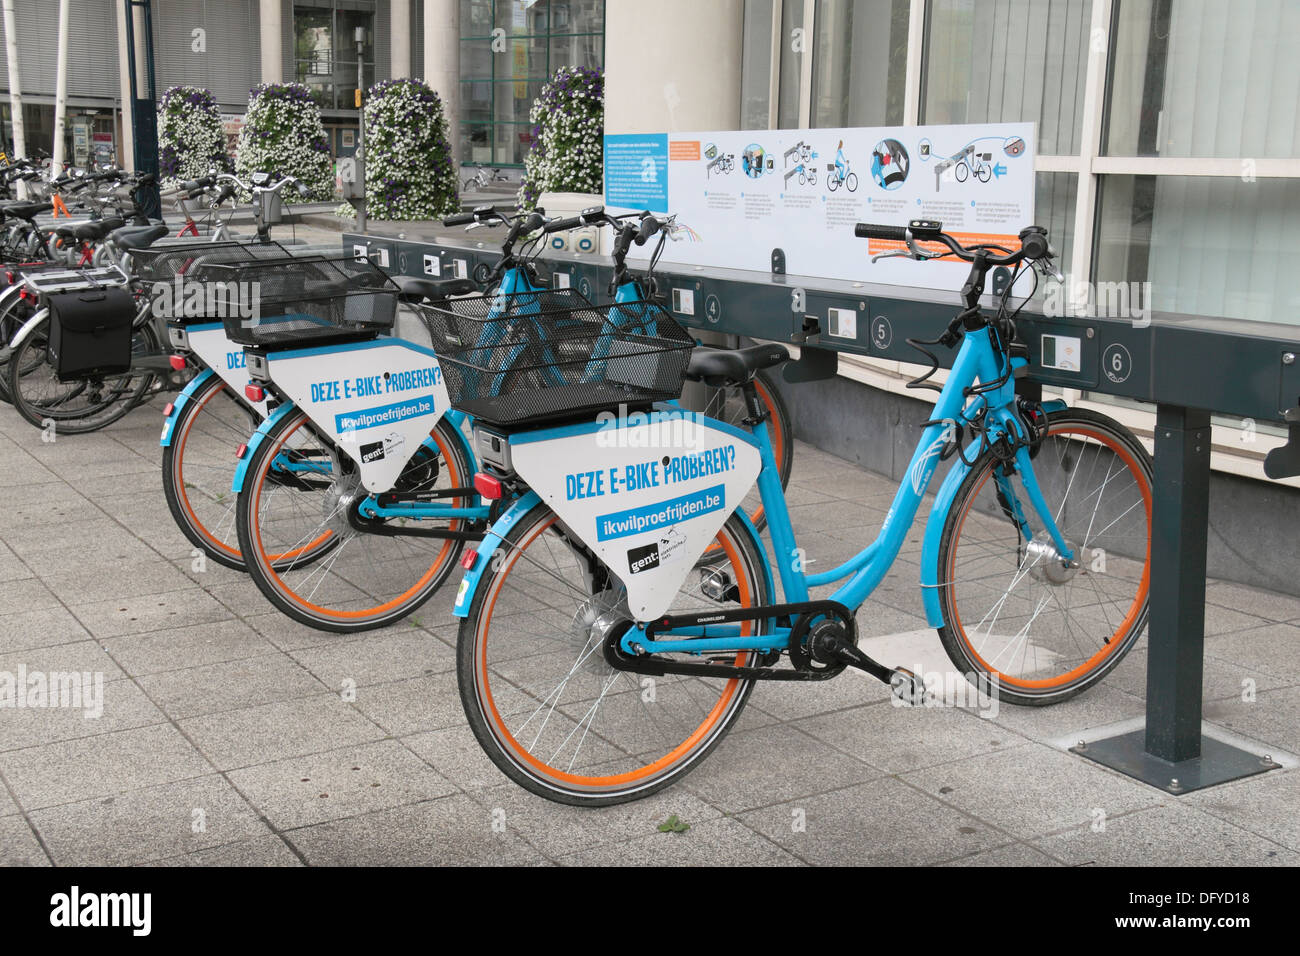 Blue Bikes, un pubblico e-bike (biciclette elettriche) nel centro storico di Gand (Gent), Fiandre Orientali, Belgio. Foto Stock